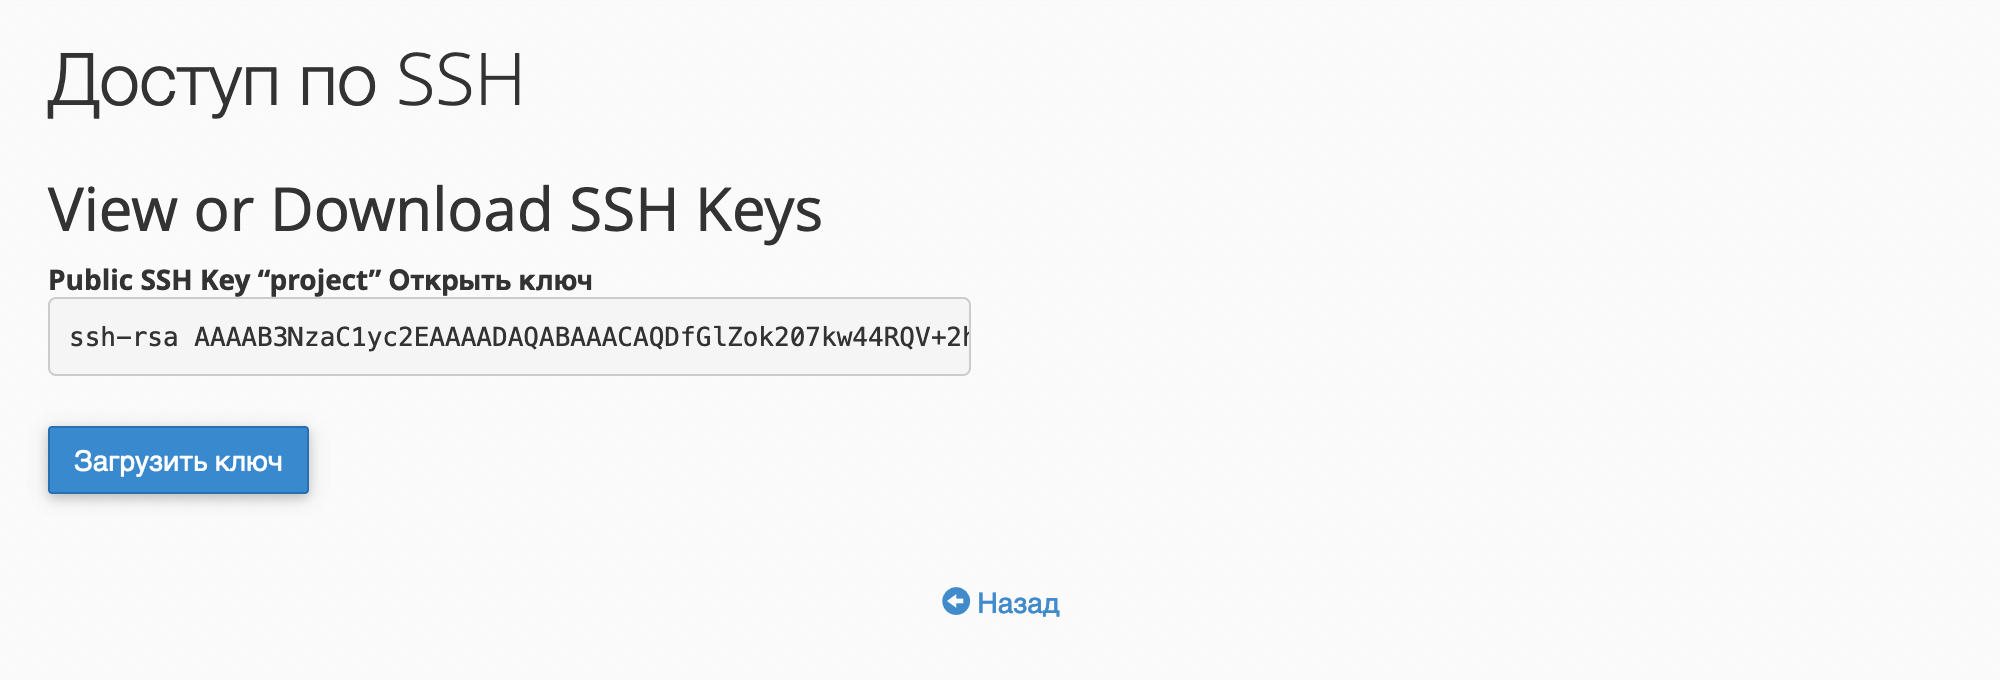 Публичный SSH-ключ в cPanel